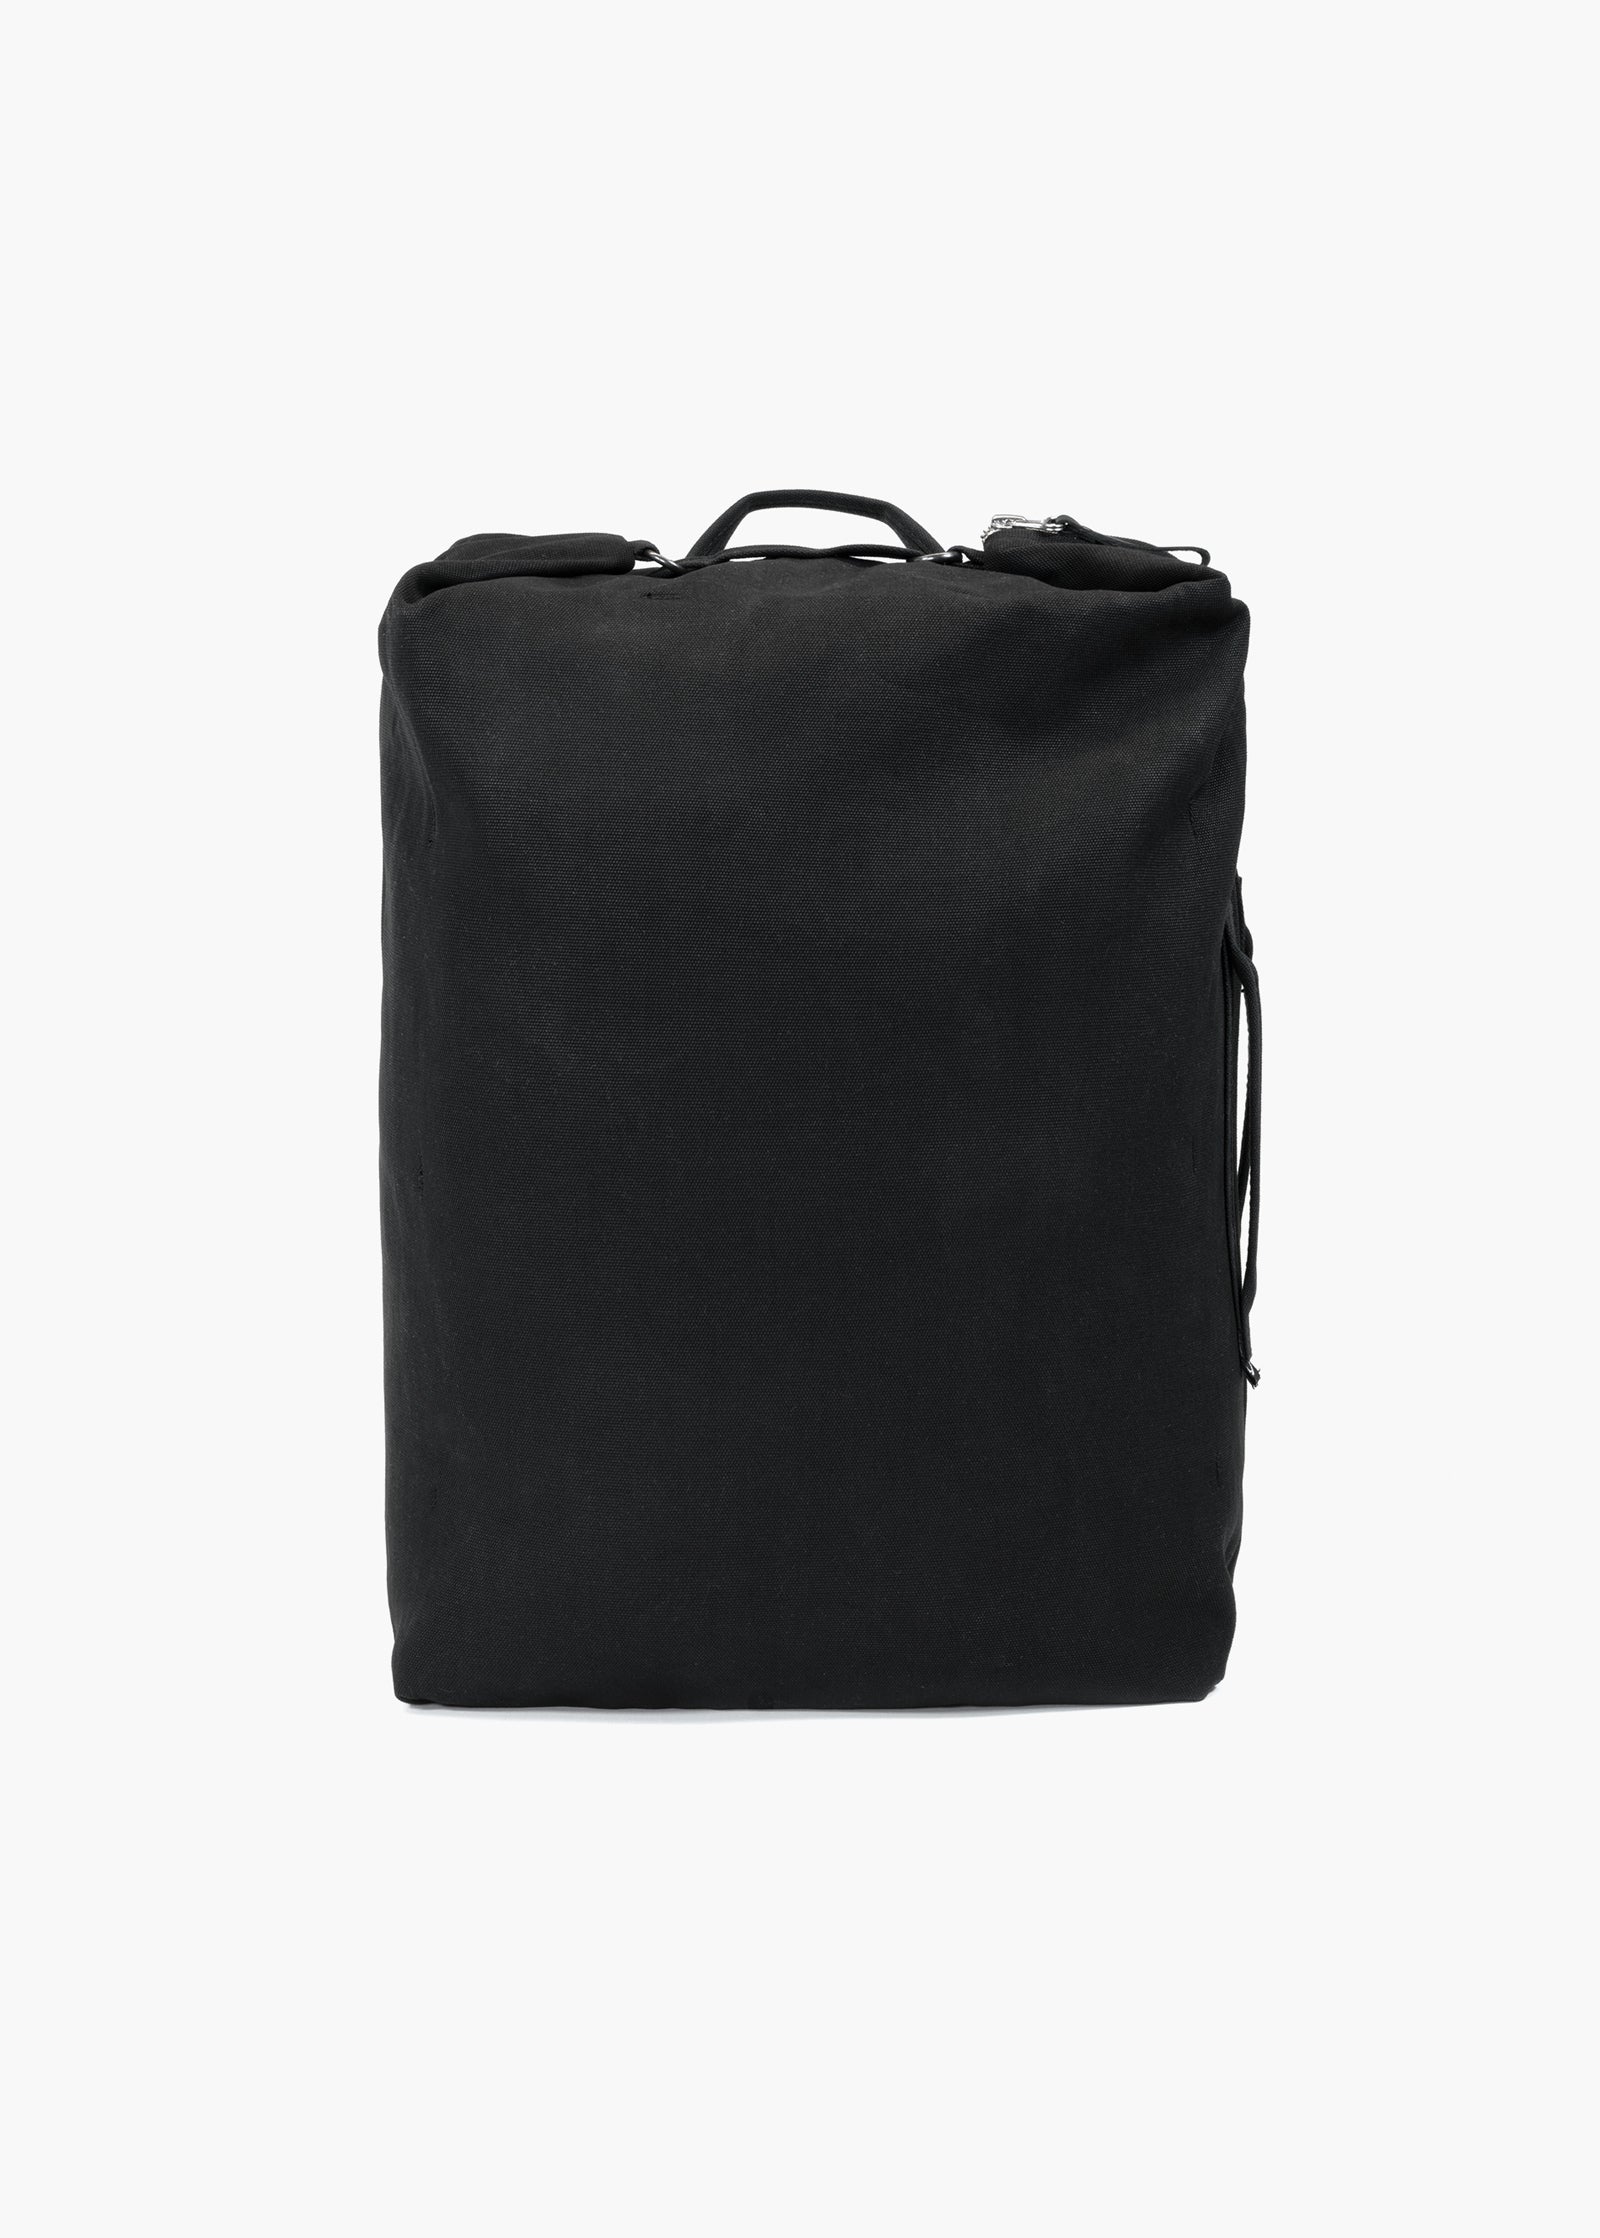 Travel Pack – All Black